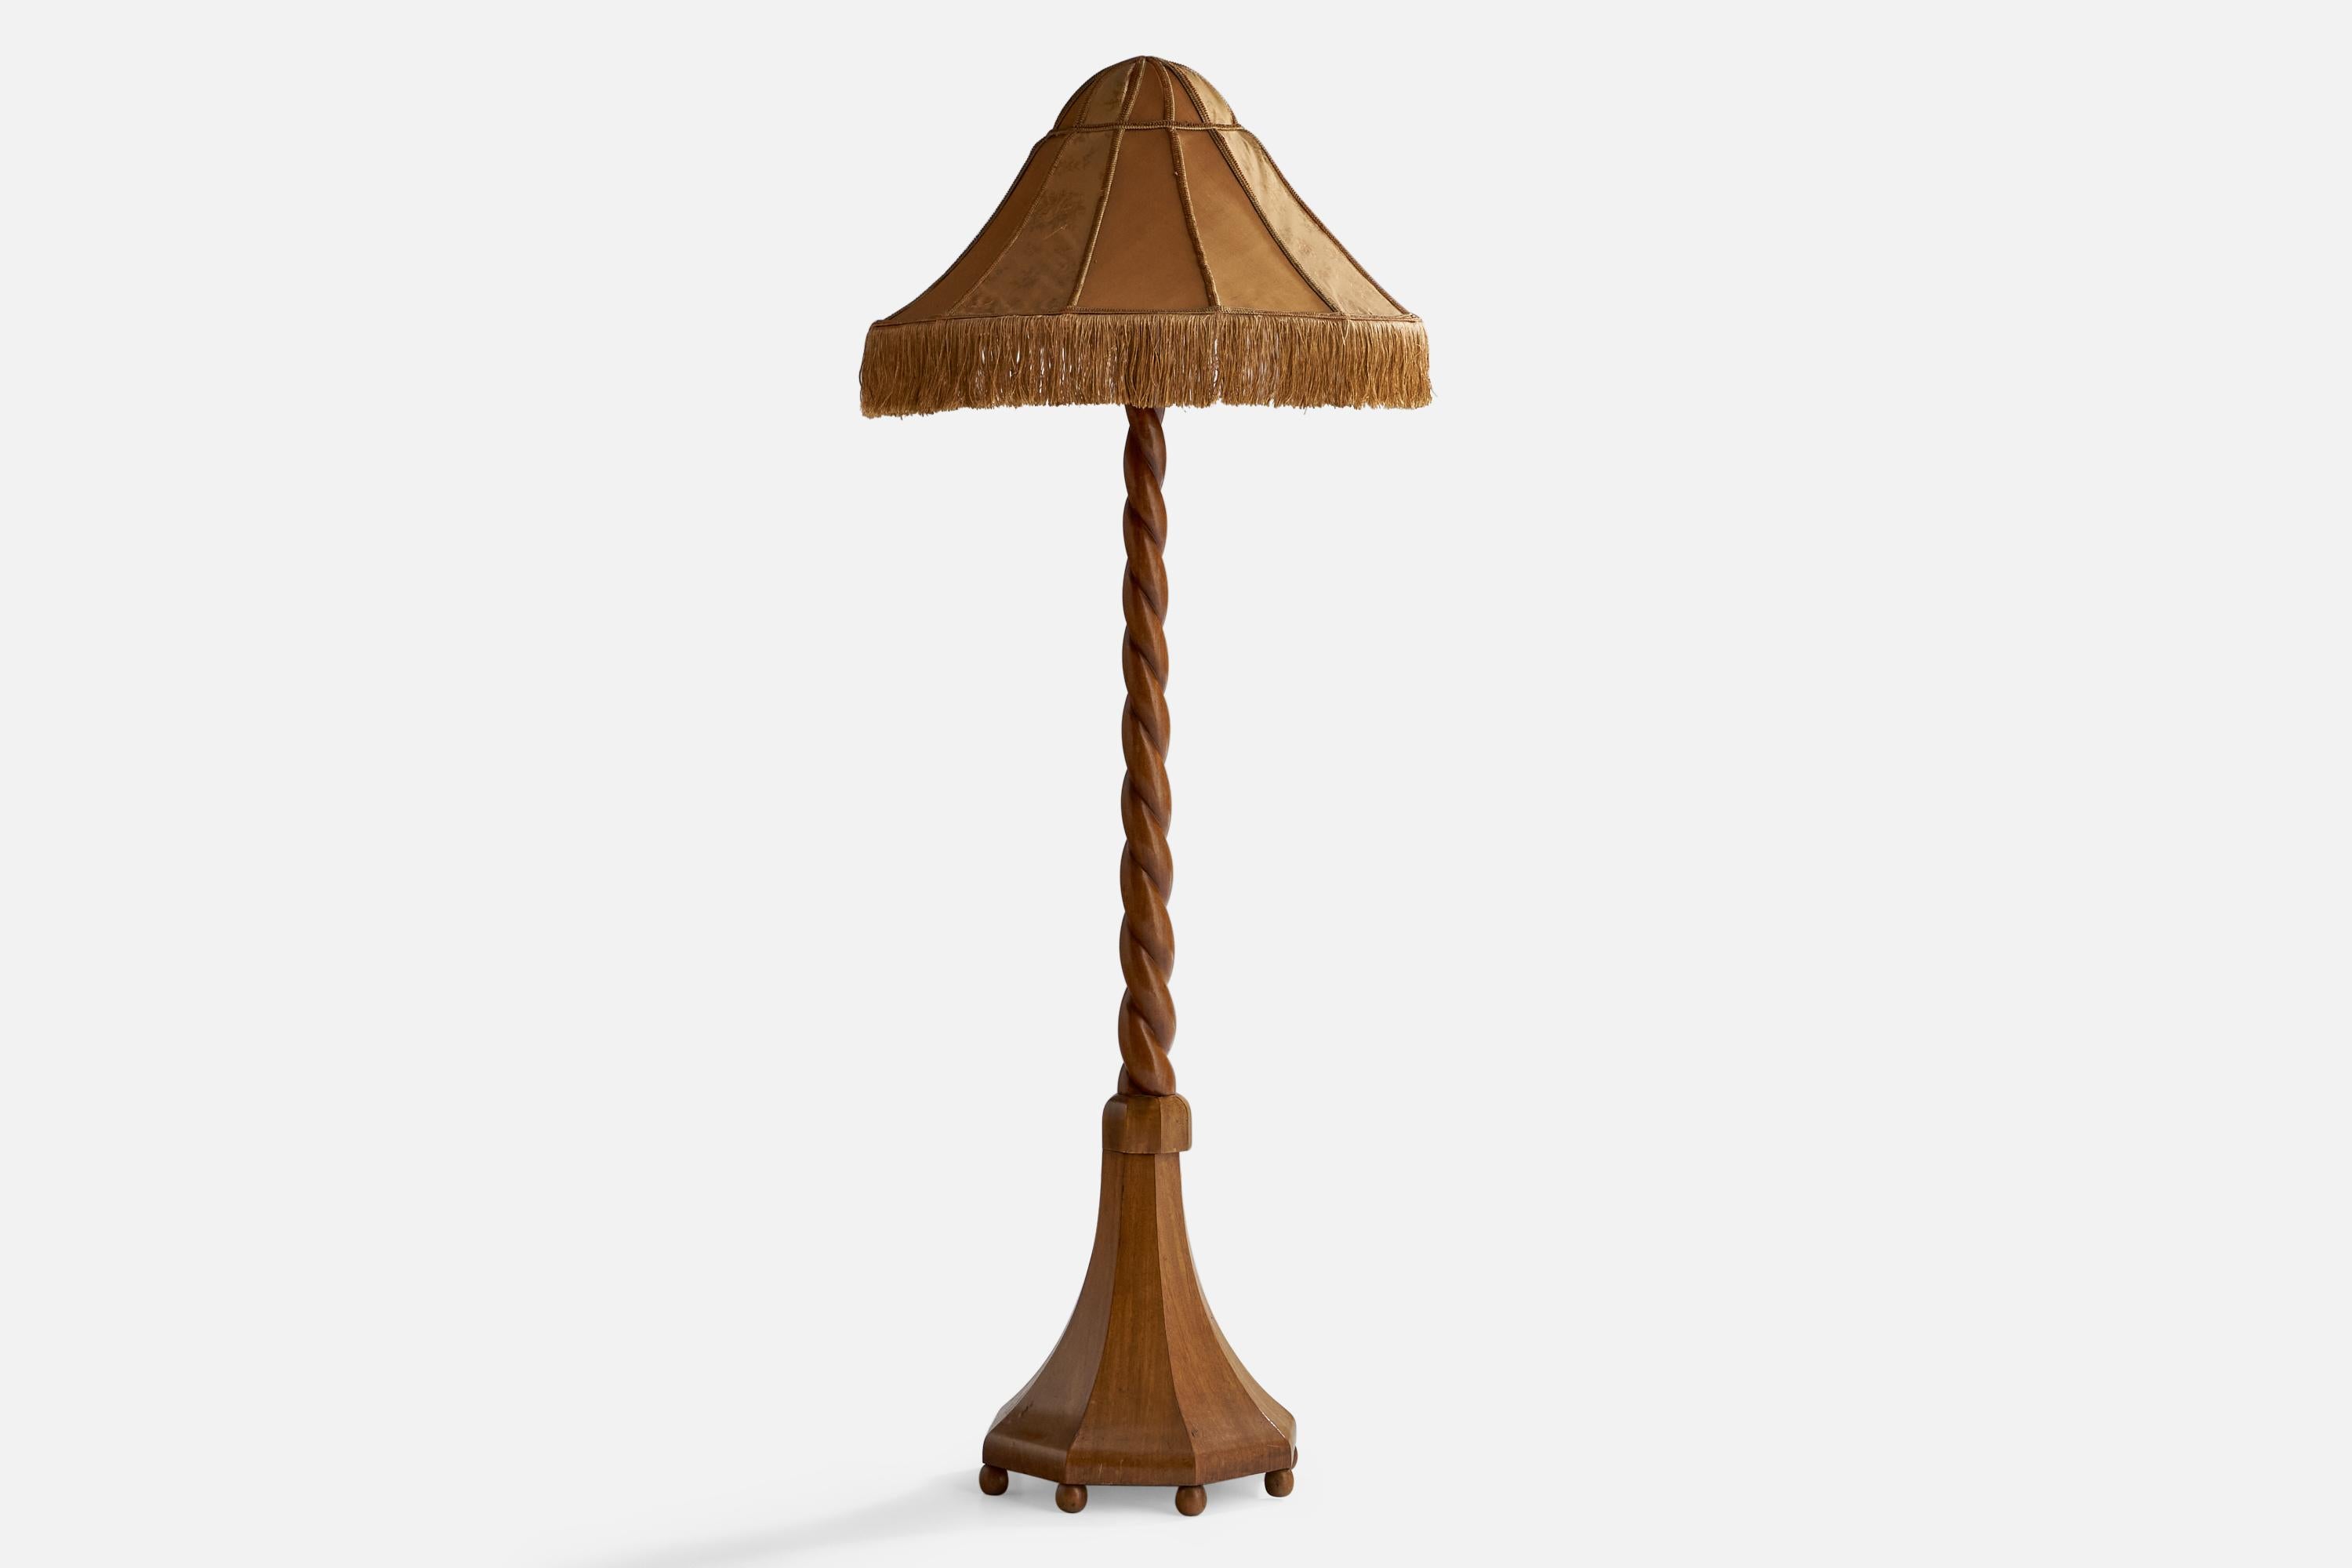 Eine Stehlampe aus geschnitzter Eiche und beige-braunem Stoff, entworfen und hergestellt in Schweden, um 1910.

Gesamtabmessungen (Zoll): 72